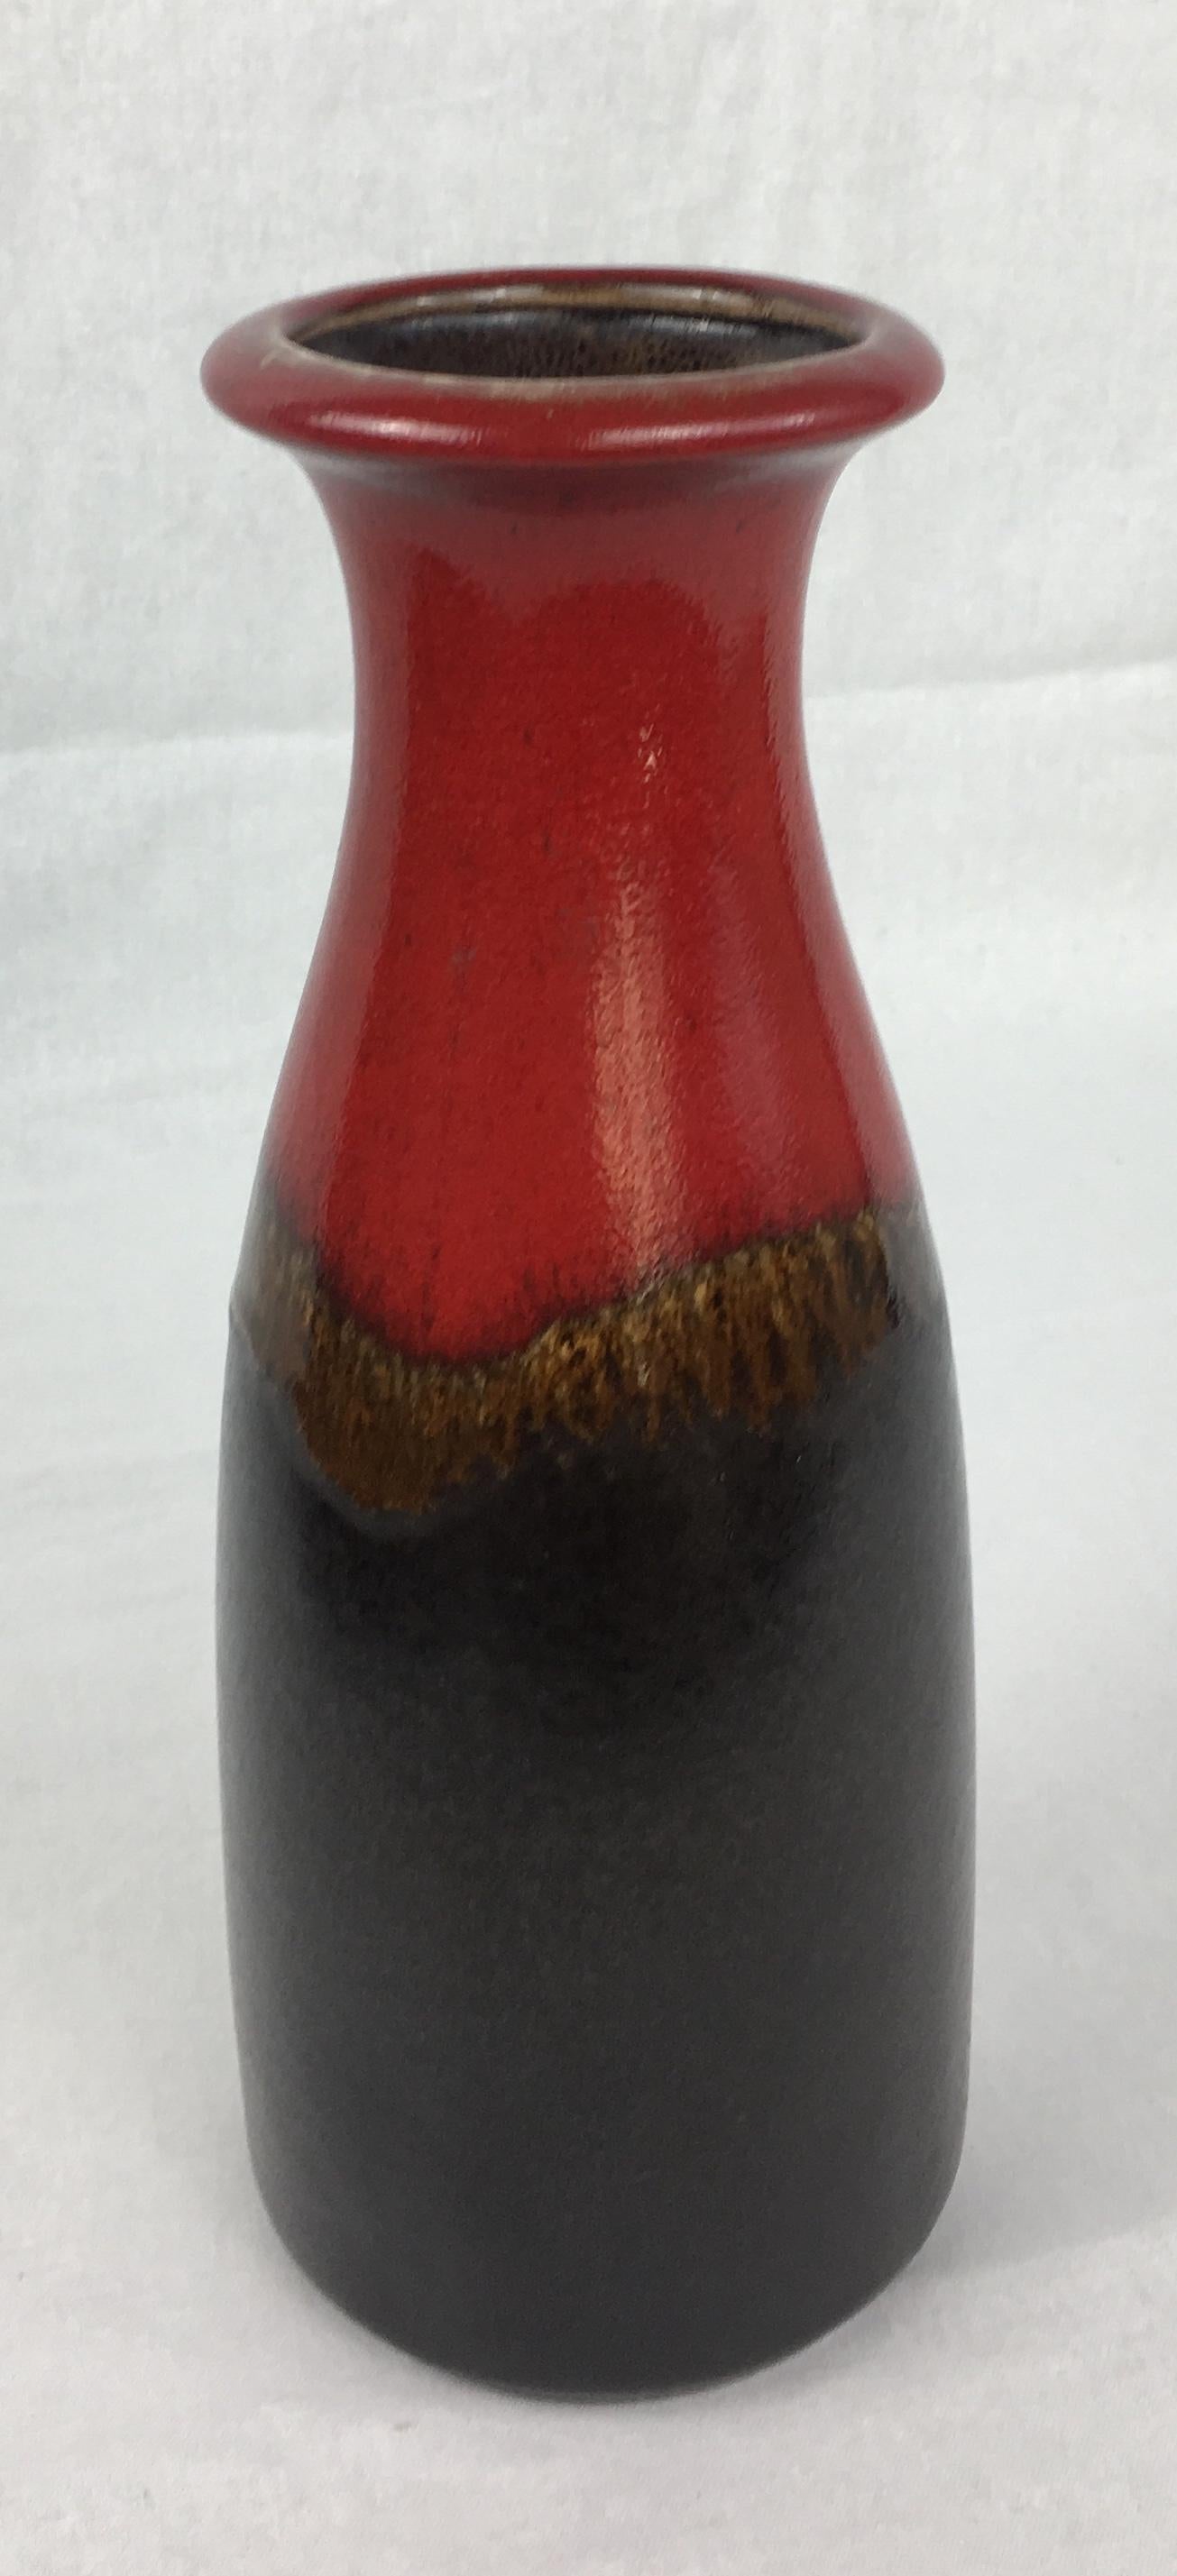 Magnifique vase ouest-allemand fabriqué à la main pour Scheurich Keramik avec des teintes rouges et noir-brun prononcées. 

Lettres en relief en bas de page W. Allemagne et numéroté 293-26.
 